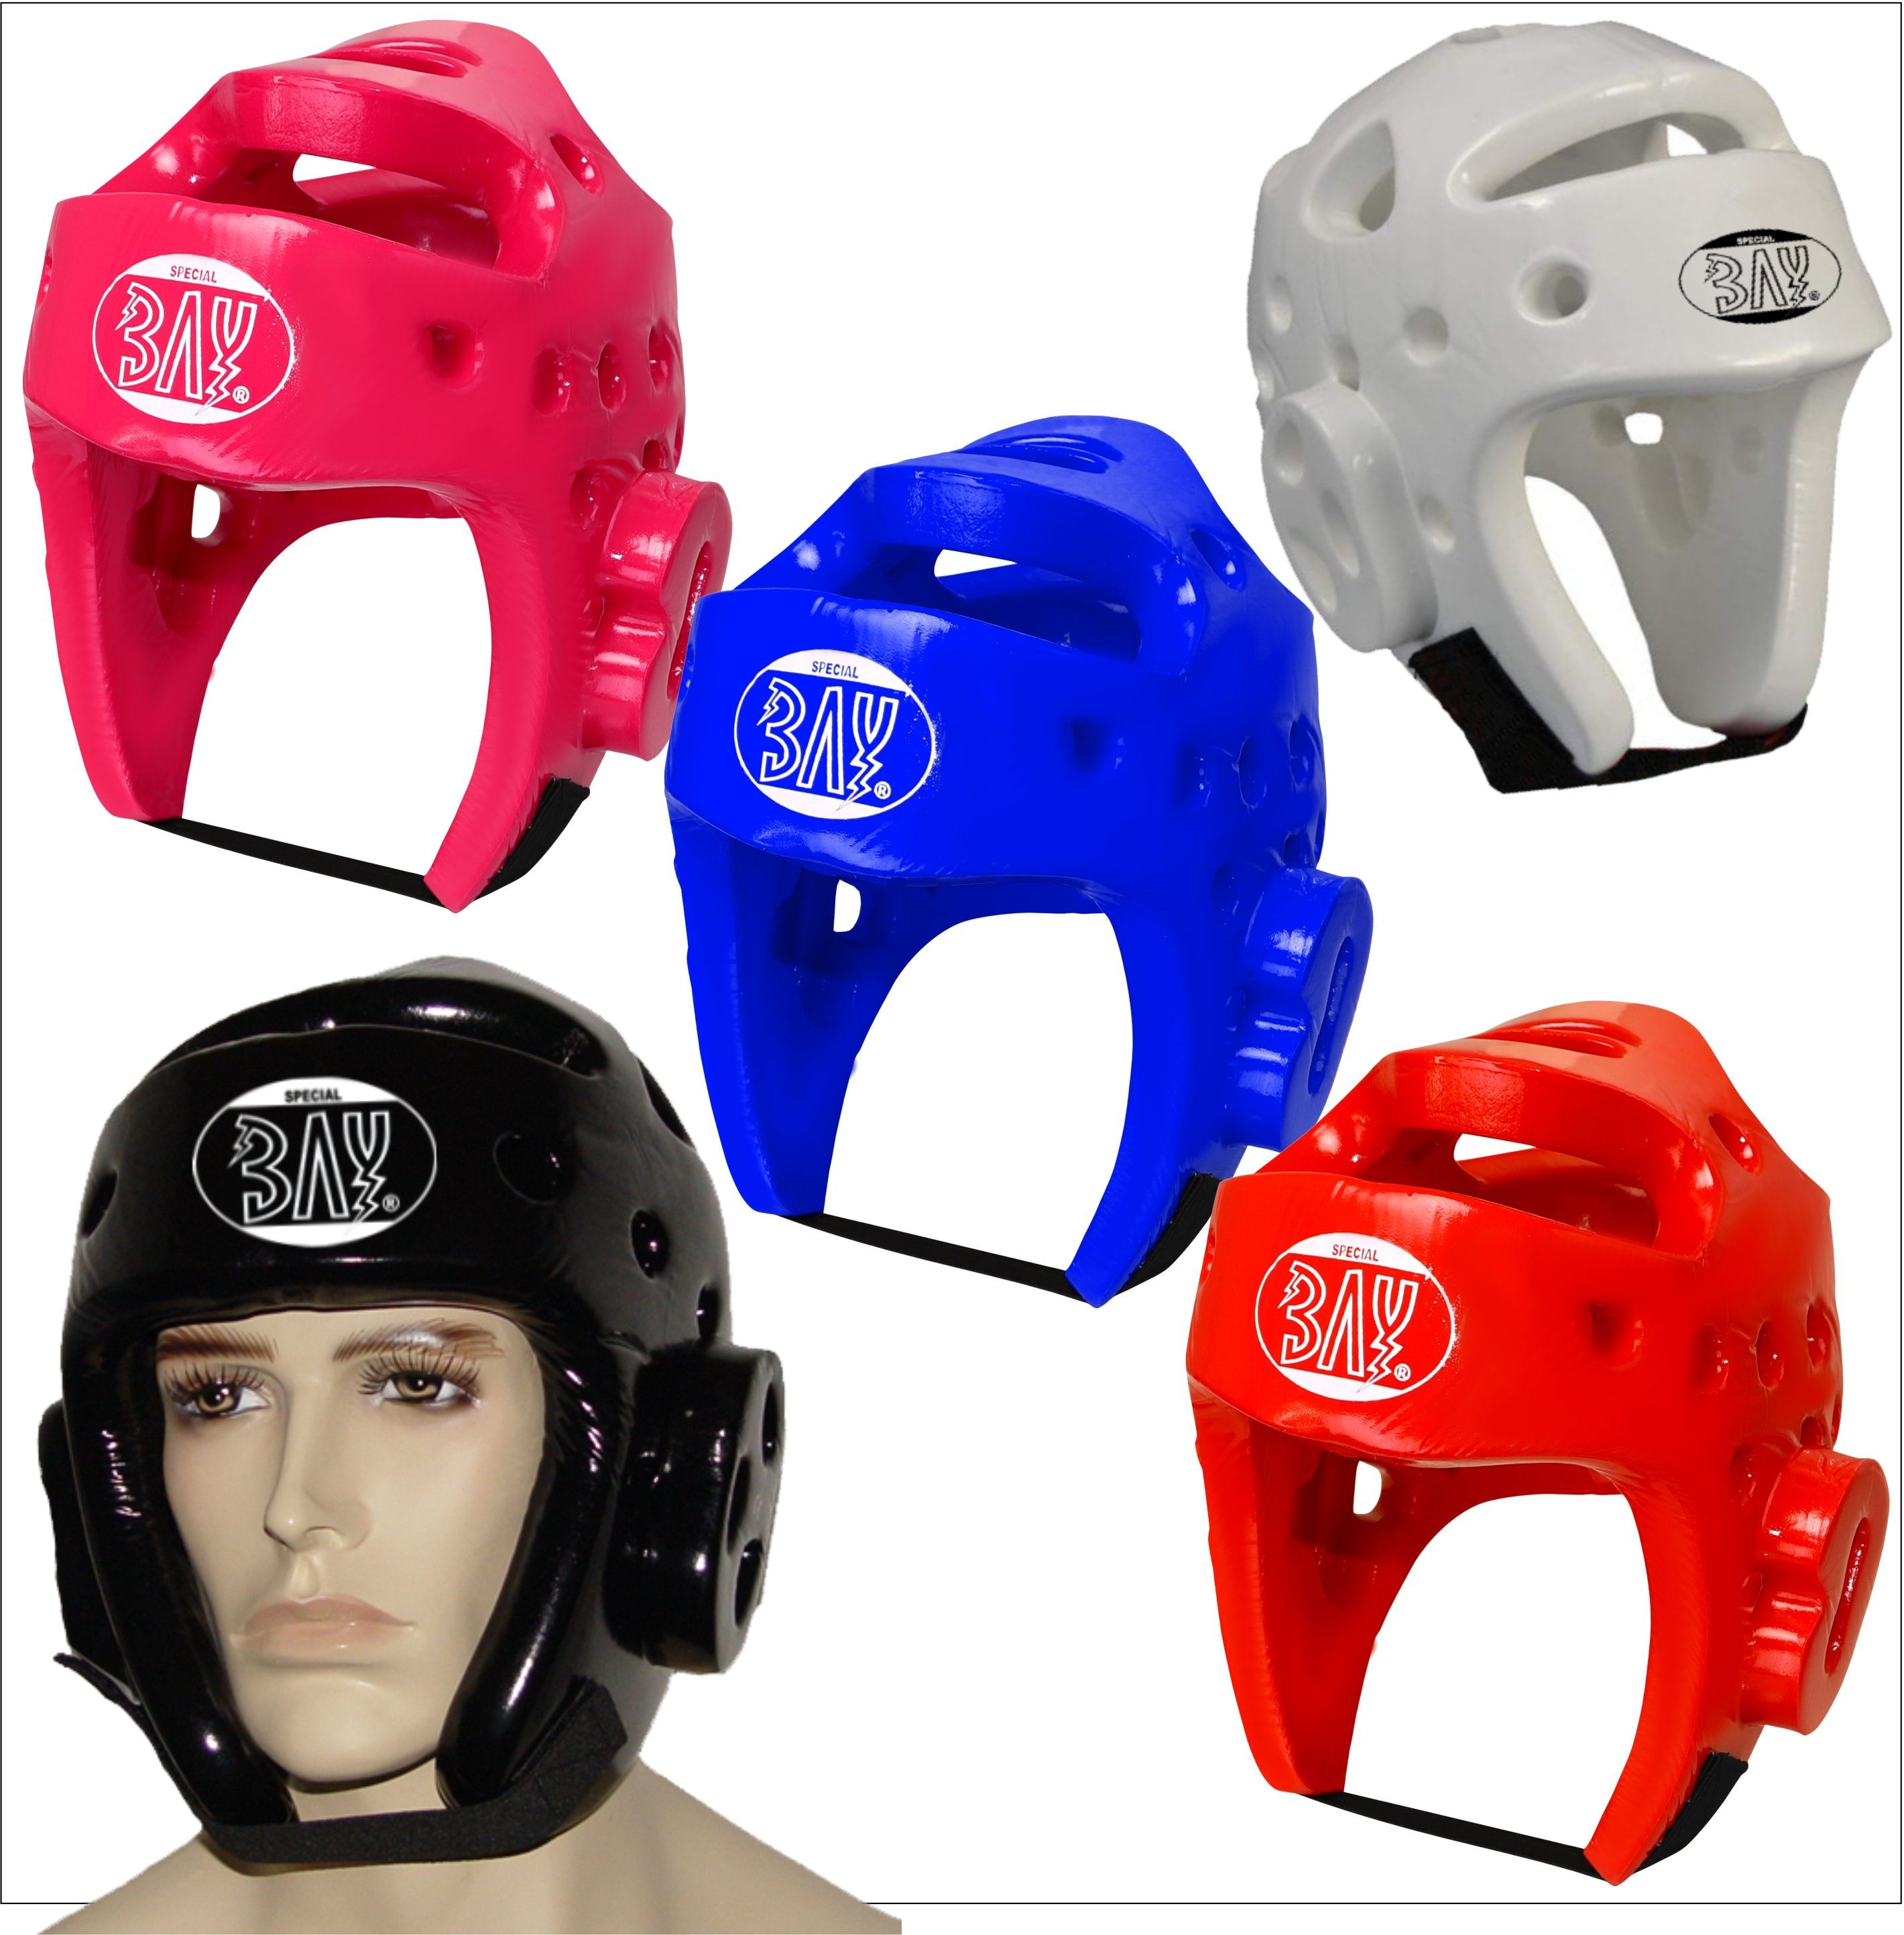 BAY-Sports Kopfschutz - besonders abwaschbar, XL Lack, Kickboxen Taekwondo und Kinder Schaumstoff leicht, Kampfsport Erwachsee, XS